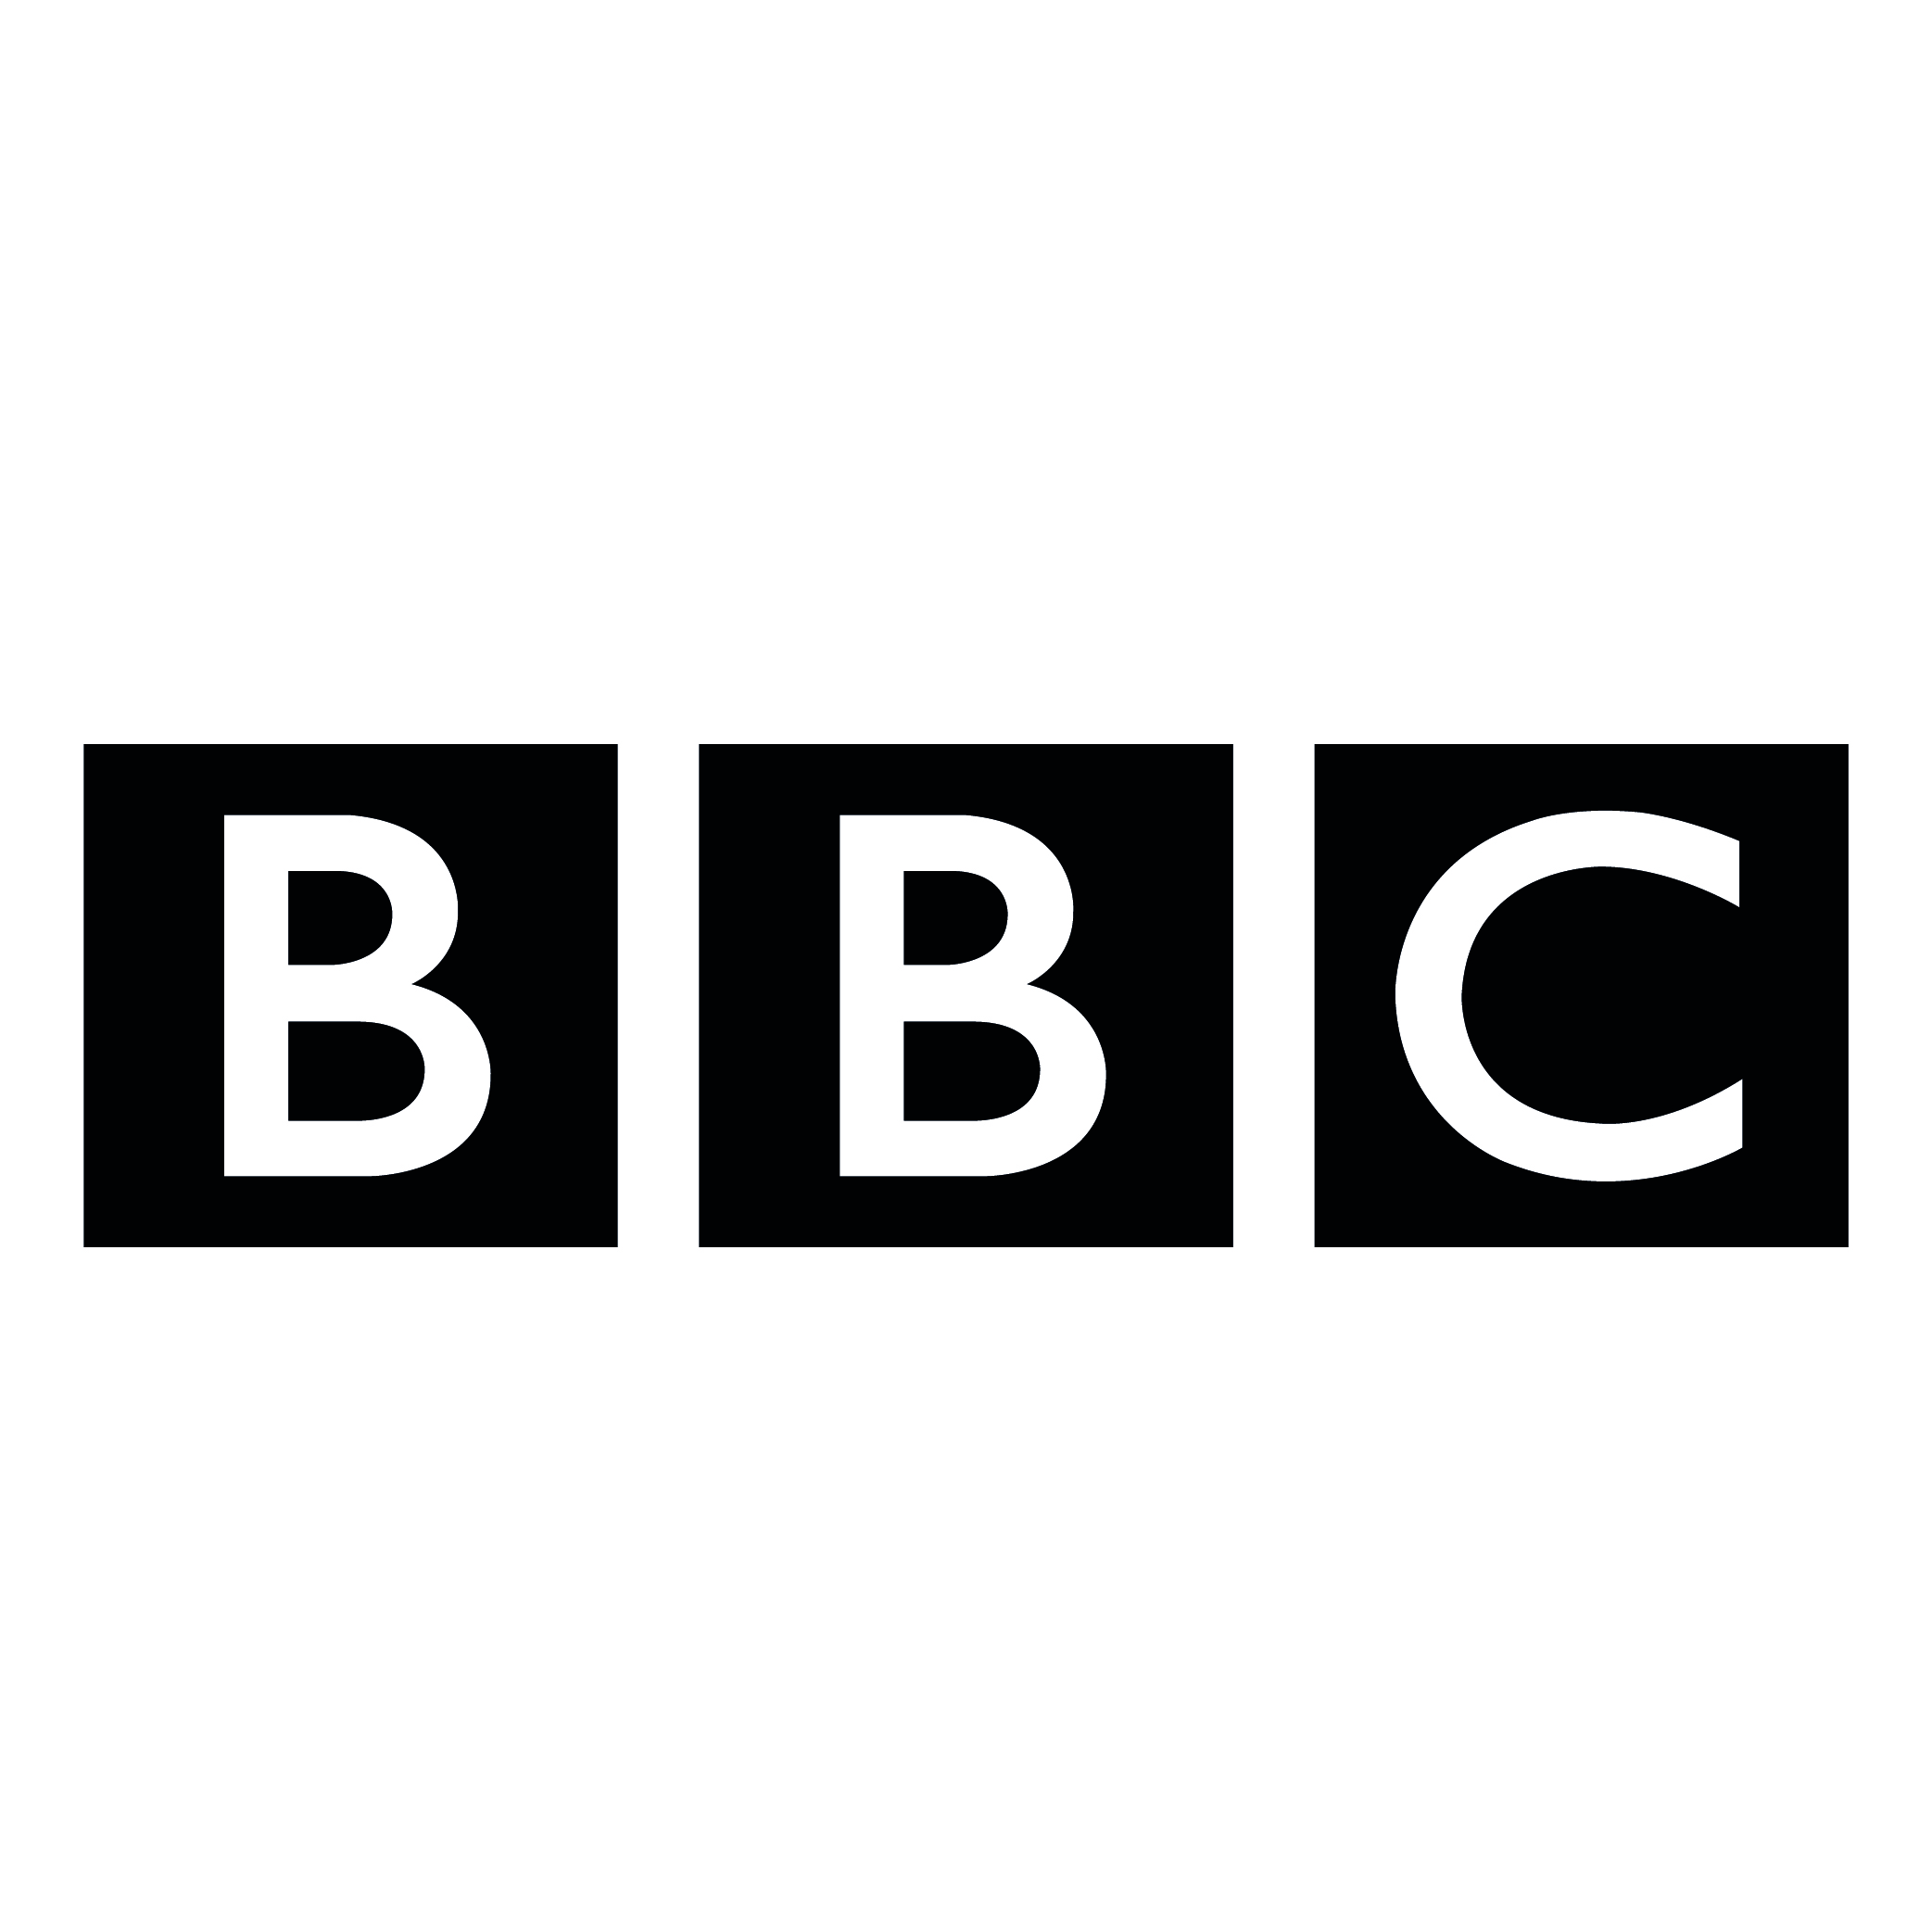 BBC LOGO - Everything Media Group